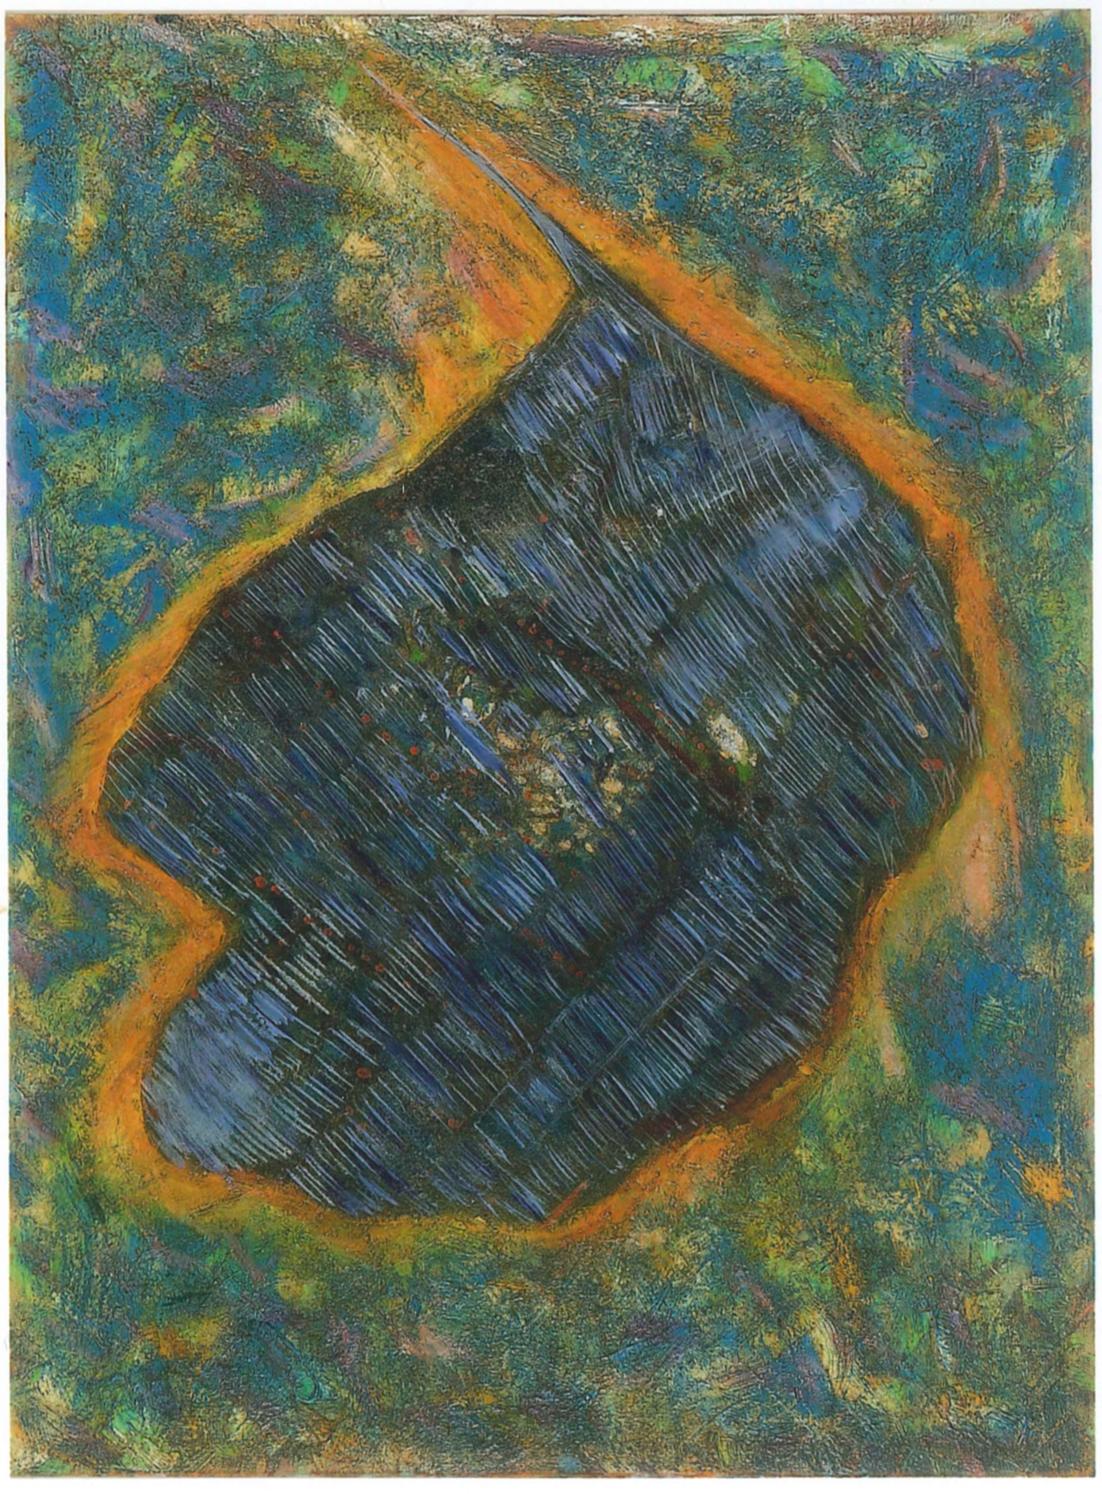 Der letzte Meteorit ist ein Originalkunstwerk von Giorgio Lo Fermo aus dem Jahr 1998.

Öl auf Leinwand.

Diese abstrakte Komposition zeichnet sich durch eine zentrale Form aus, die an einen Meteoriten erinnert: Die Farben Blau und Dunkelgrün bilden